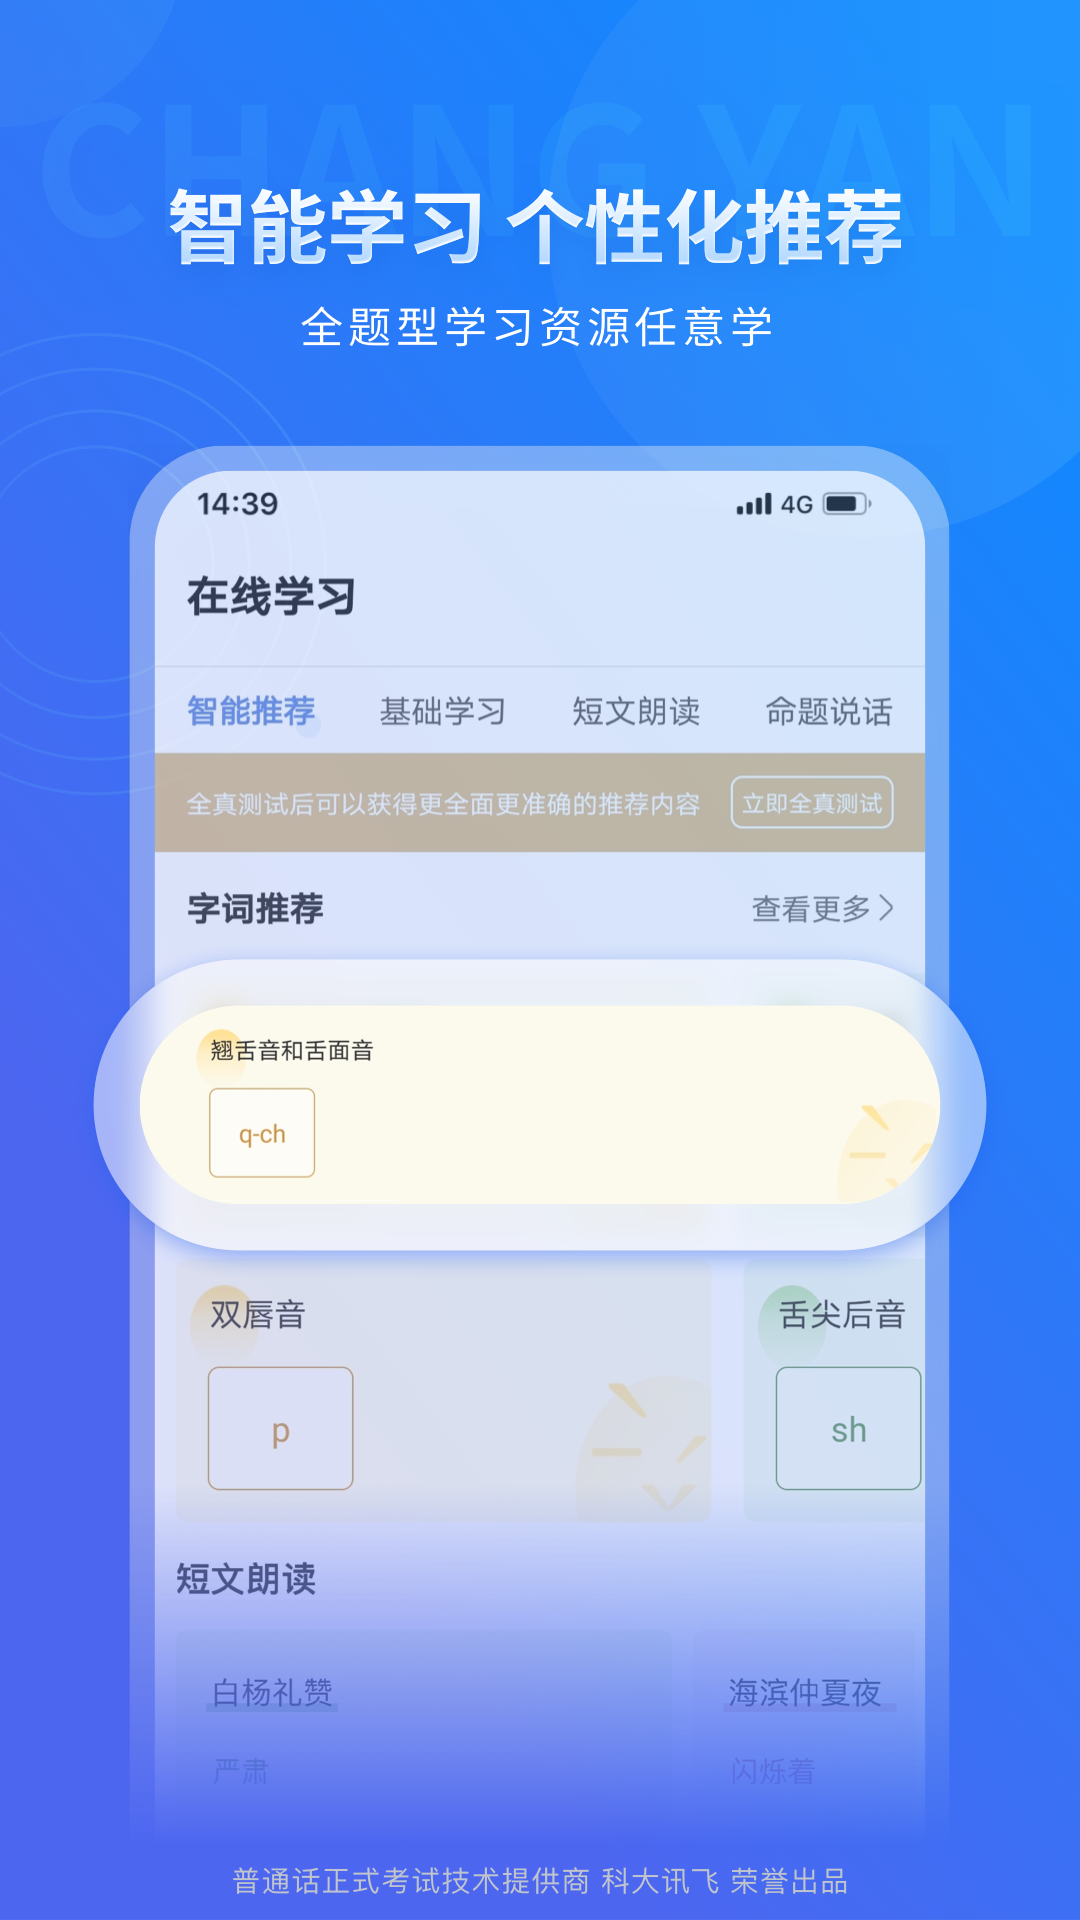 畅言普通话苹果手机版 v5.0.1060 官方版4